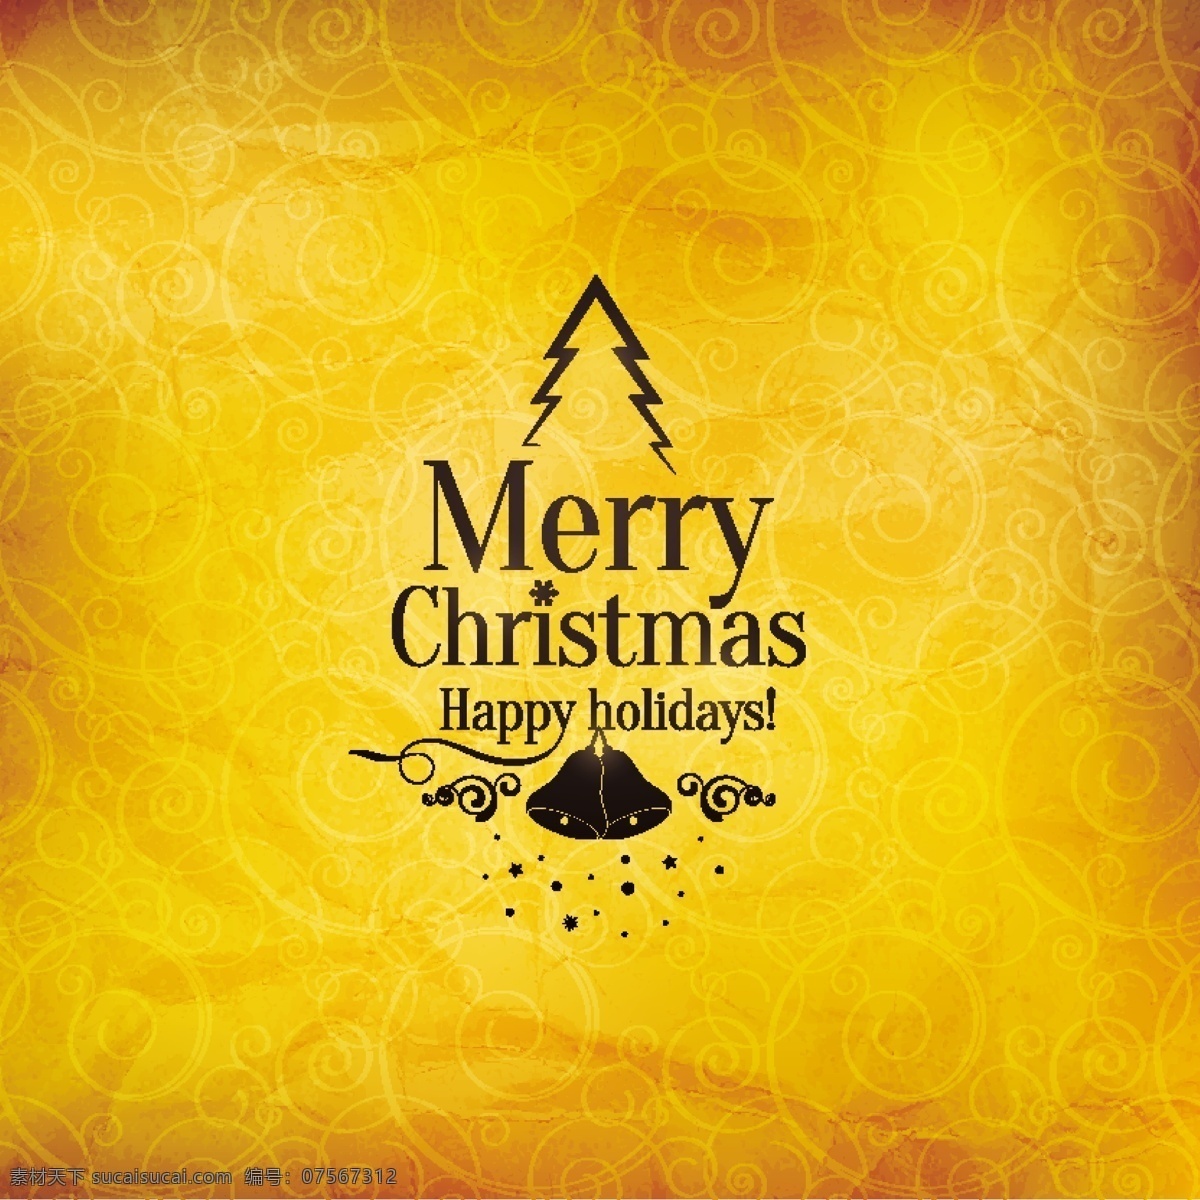 圣诞树 矢量 花纹 温暖 黄金 金色圣诞 圣诞快乐 矢量圣诞树 底纹边框 花边花纹 黄色